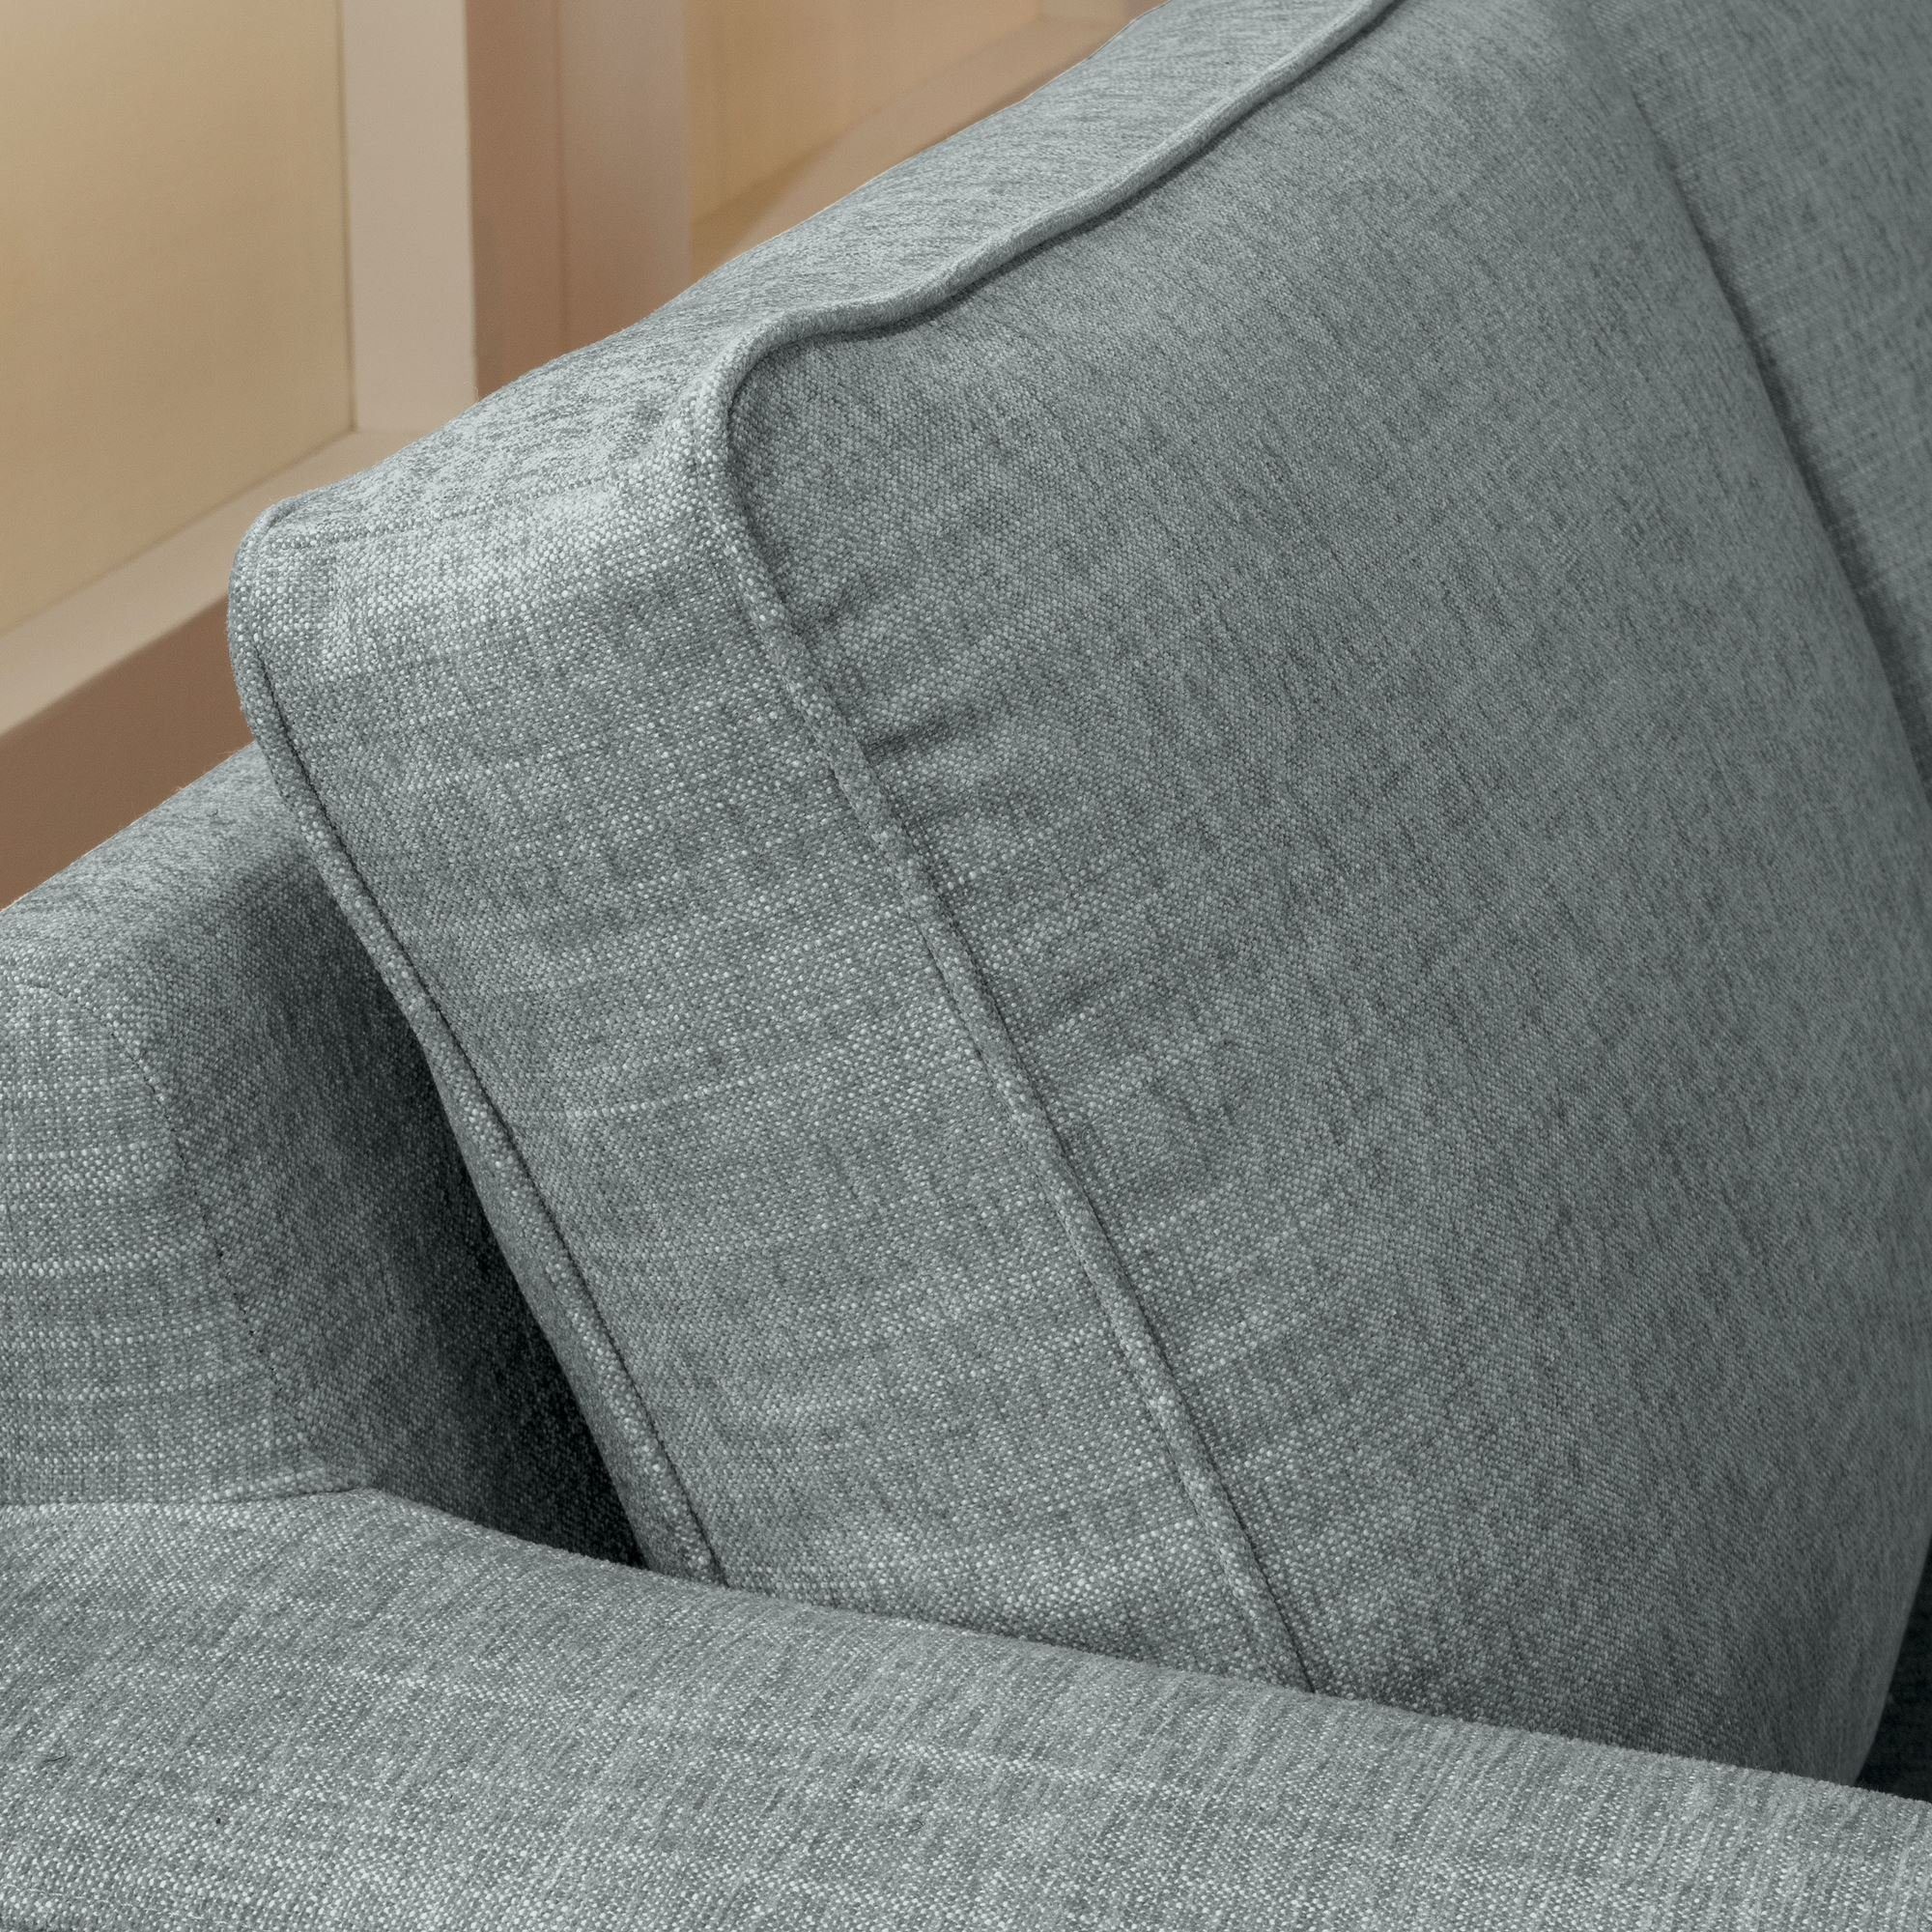 Sofa Sitz 1 Kostenlosem Chenille hochwertig Kessel 58 3-Sitzer inkl. verarbeitet,bequemer Buche Kasia Bezug Sparpreis Sofa Teile, aufm natur, Versand